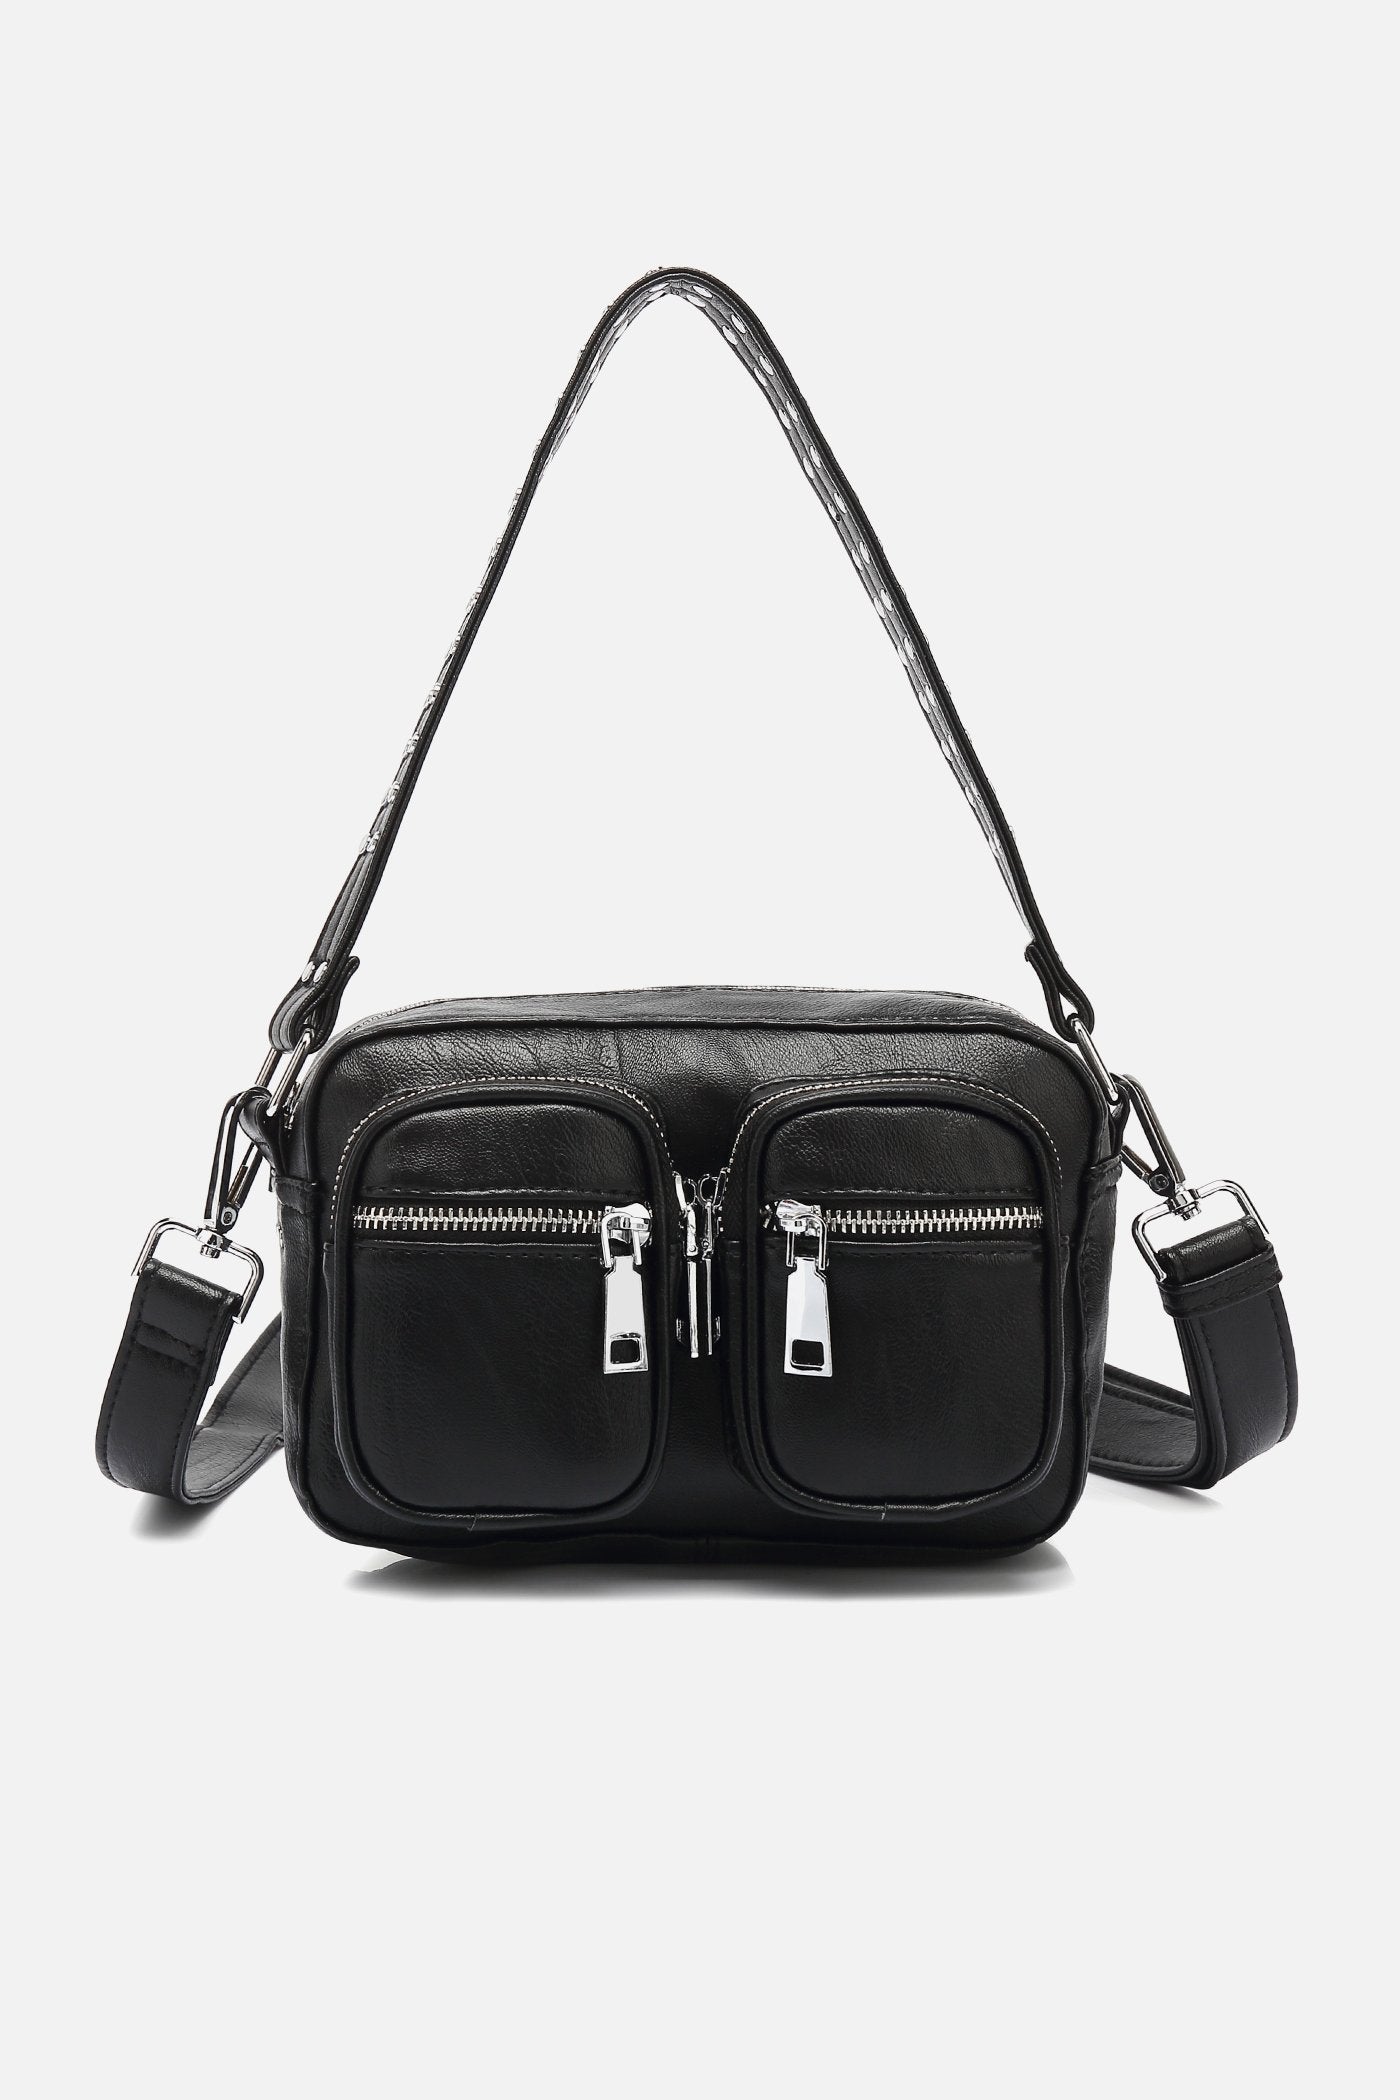 Kendra Bag Black Leather Look Black Leather Look – Noellafashion.com